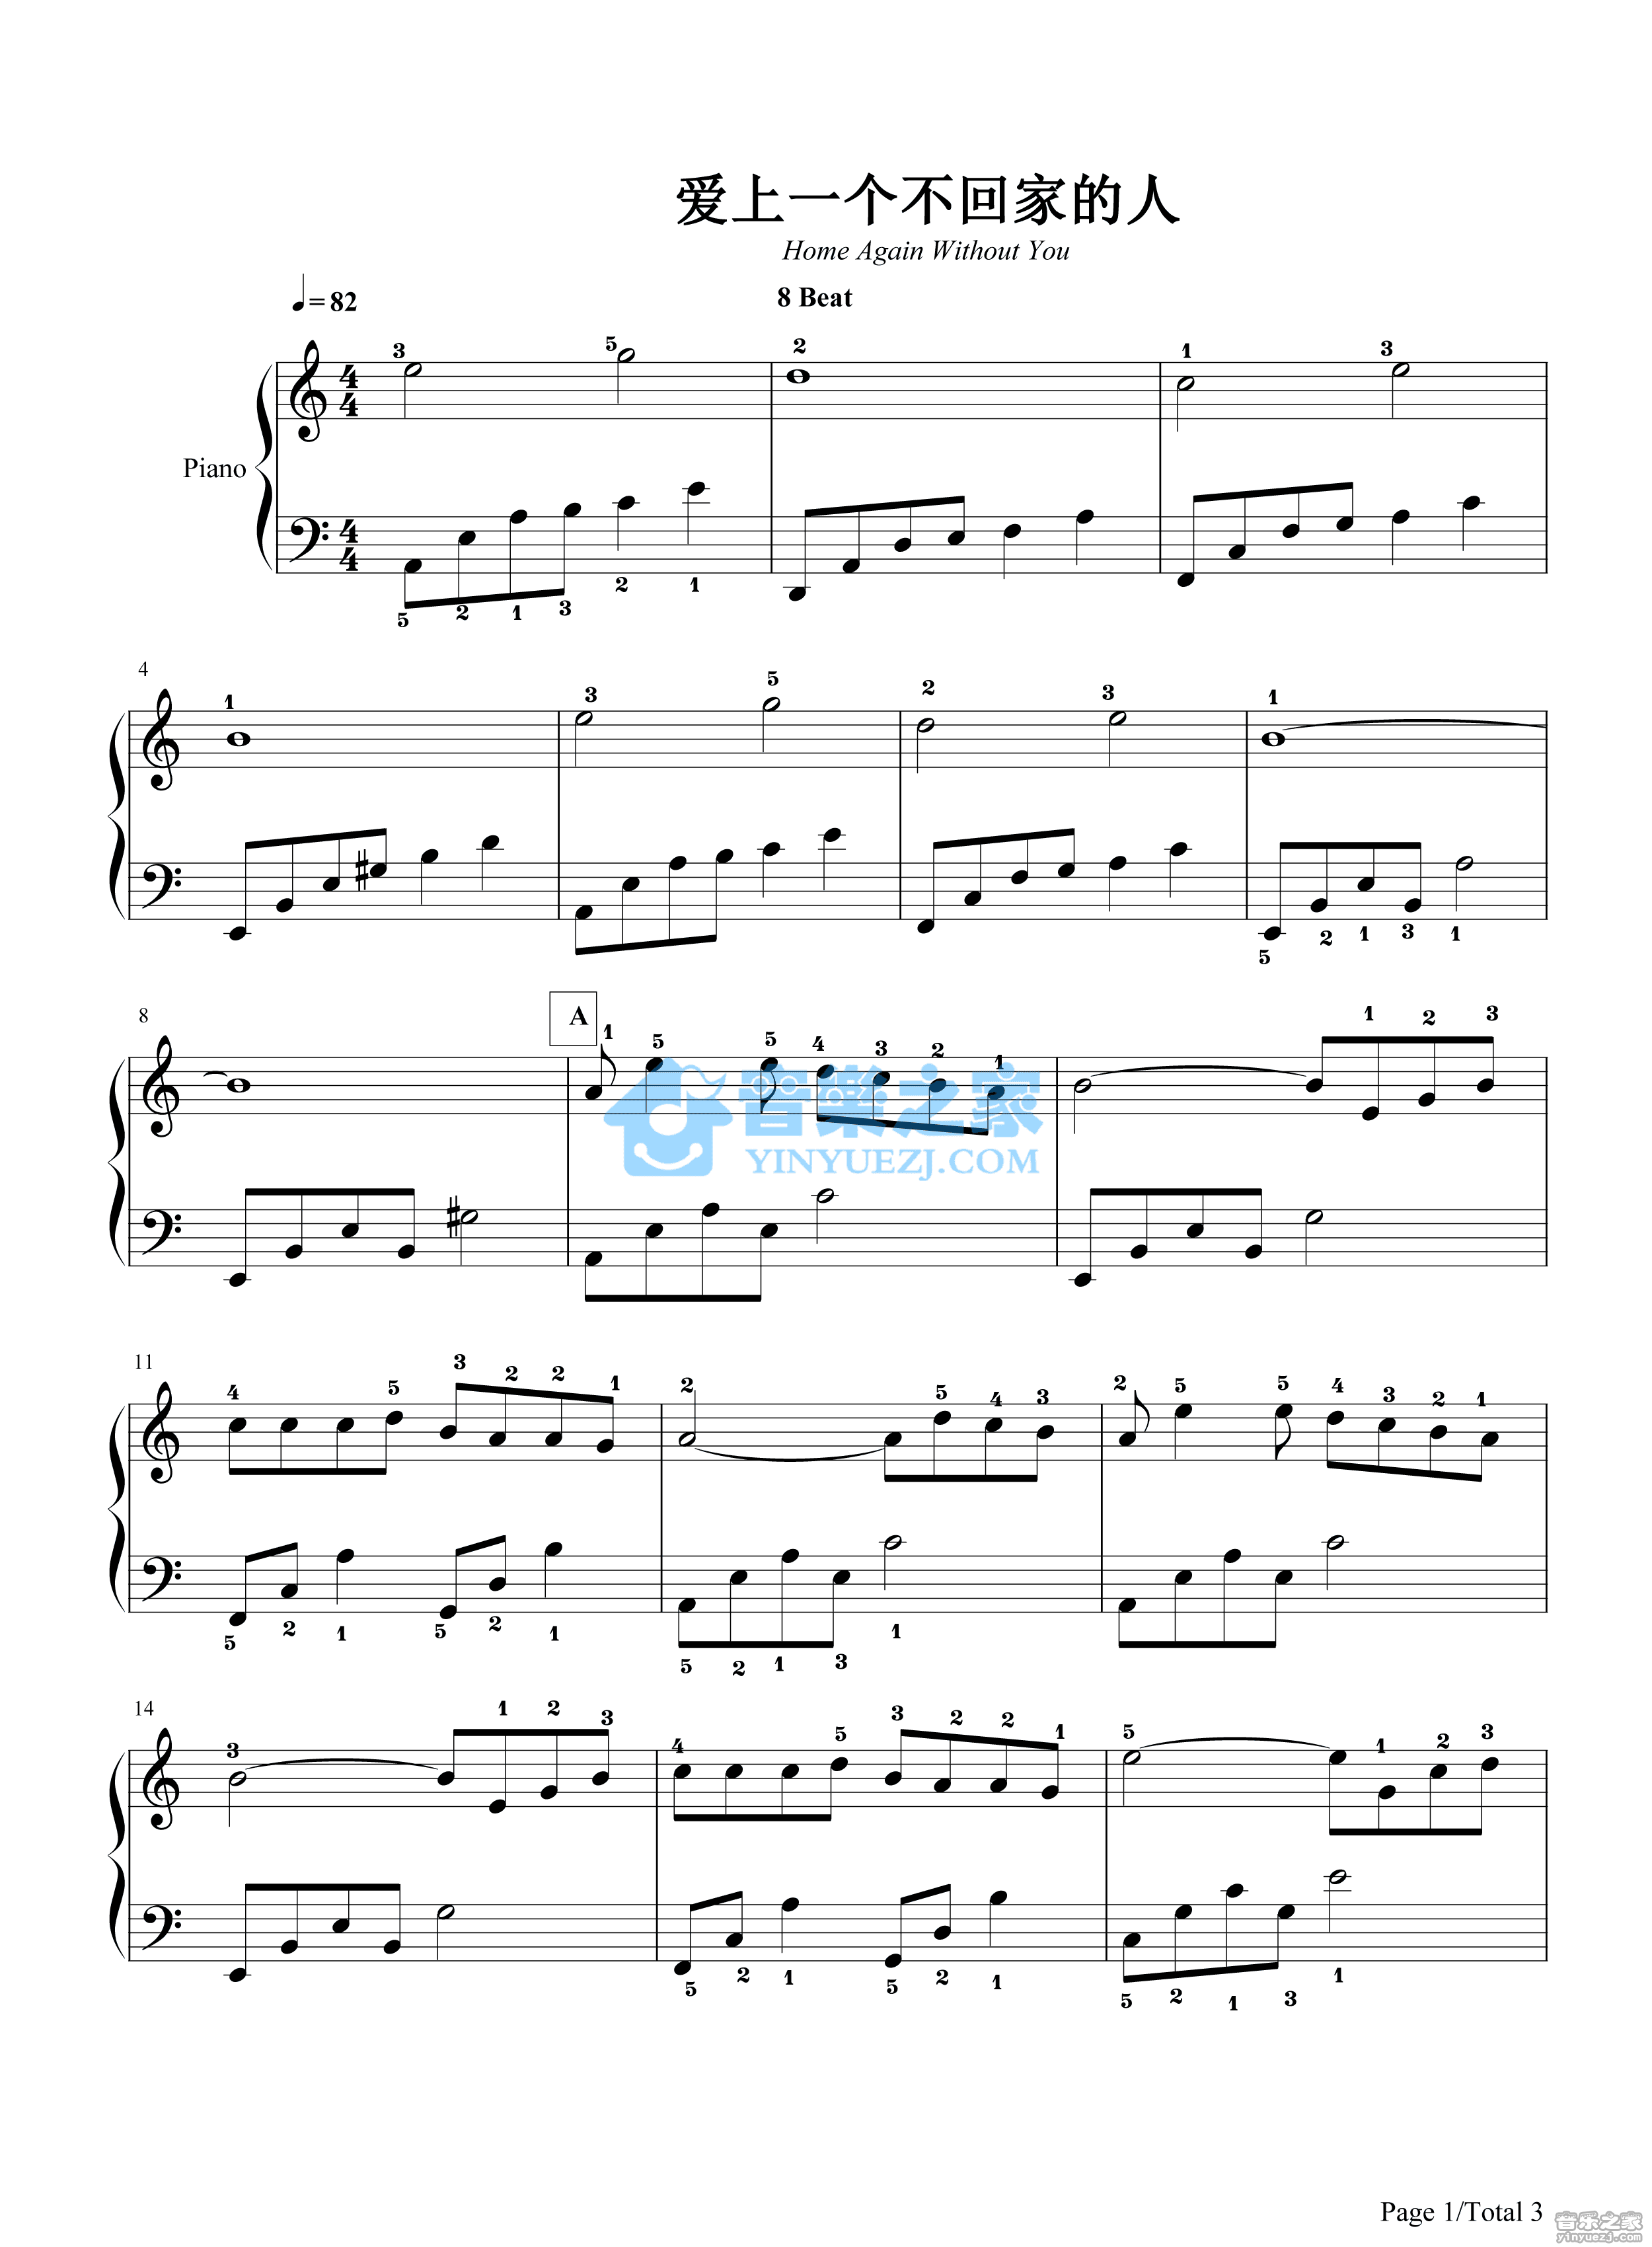 爱上一个不回家的人五线谱预览1-钢琴谱文件（五线谱、双手简谱、数字谱、Midi、PDF）免费下载